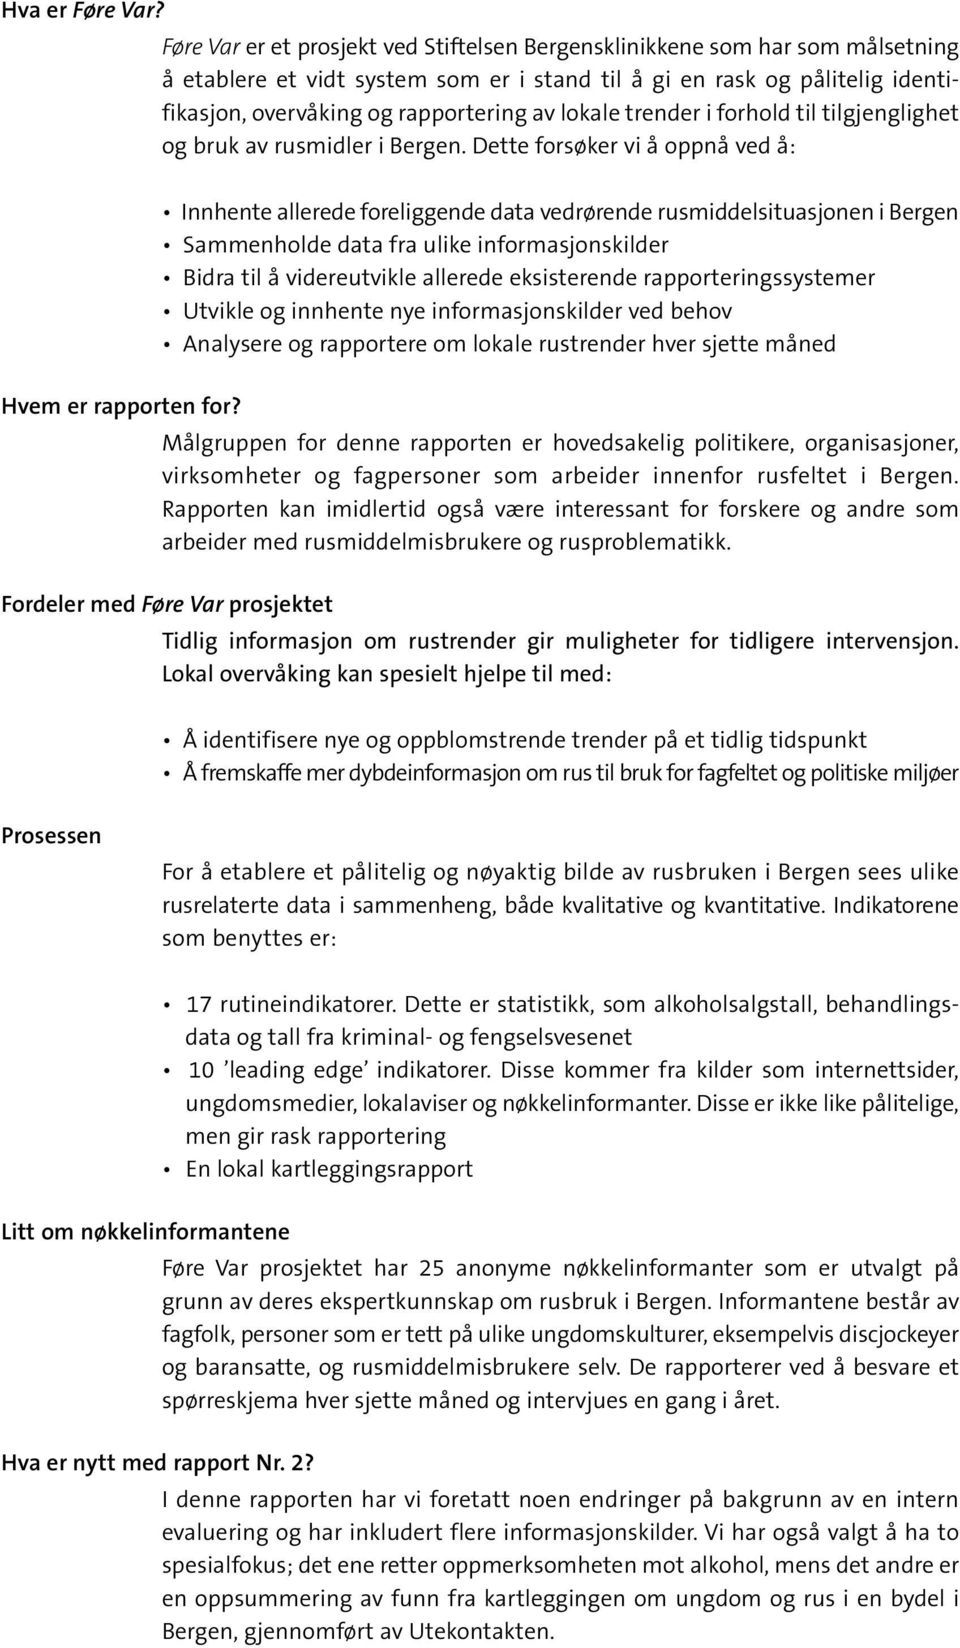 lokale trender i forhold til tilgjenglighet og bruk av rusmidler i Bergen. Dette forsøker vi å oppnå ved å: Hvem er rapporten for?